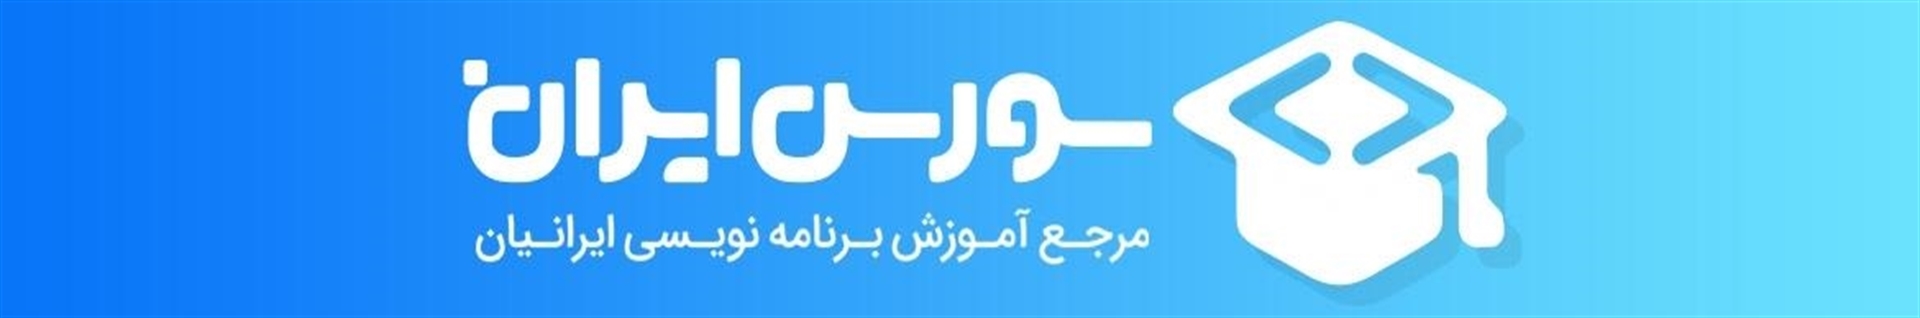 آموزش برنامه نویسی سورس ایران